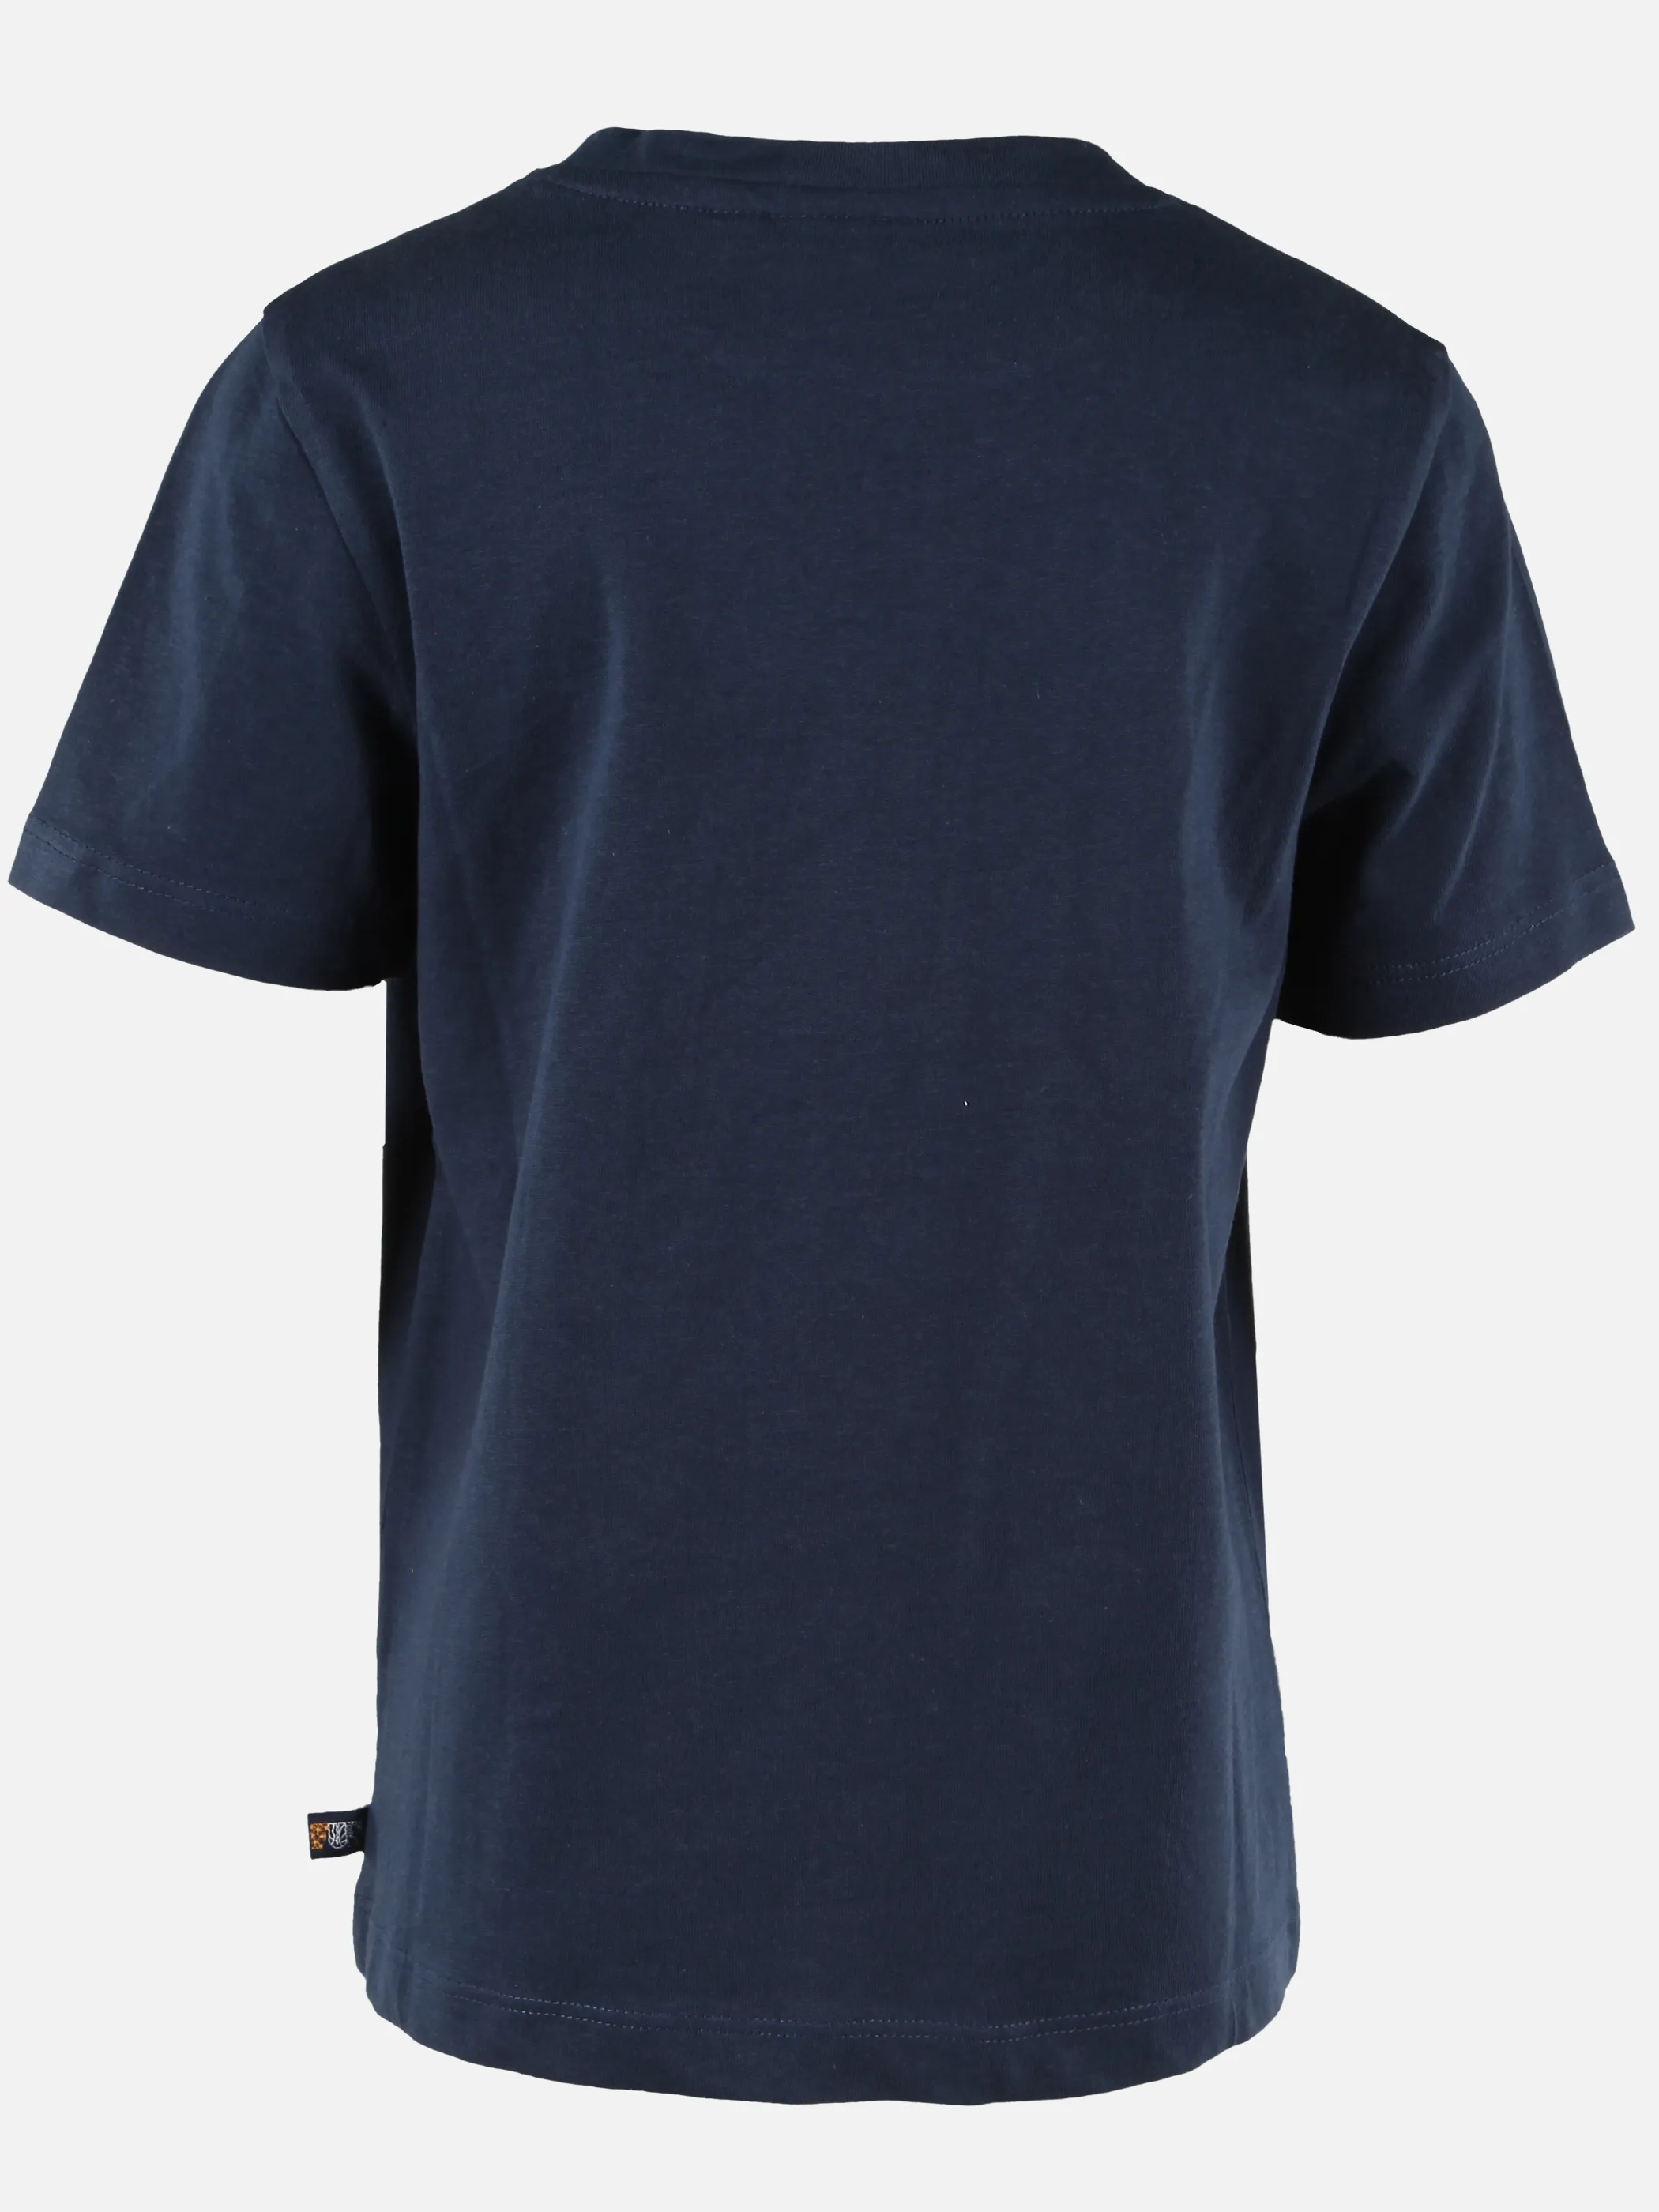 Stop + Go KJ T-Shirt mit Fußball Frontdruck in blau Blau 892782 BLAU 2